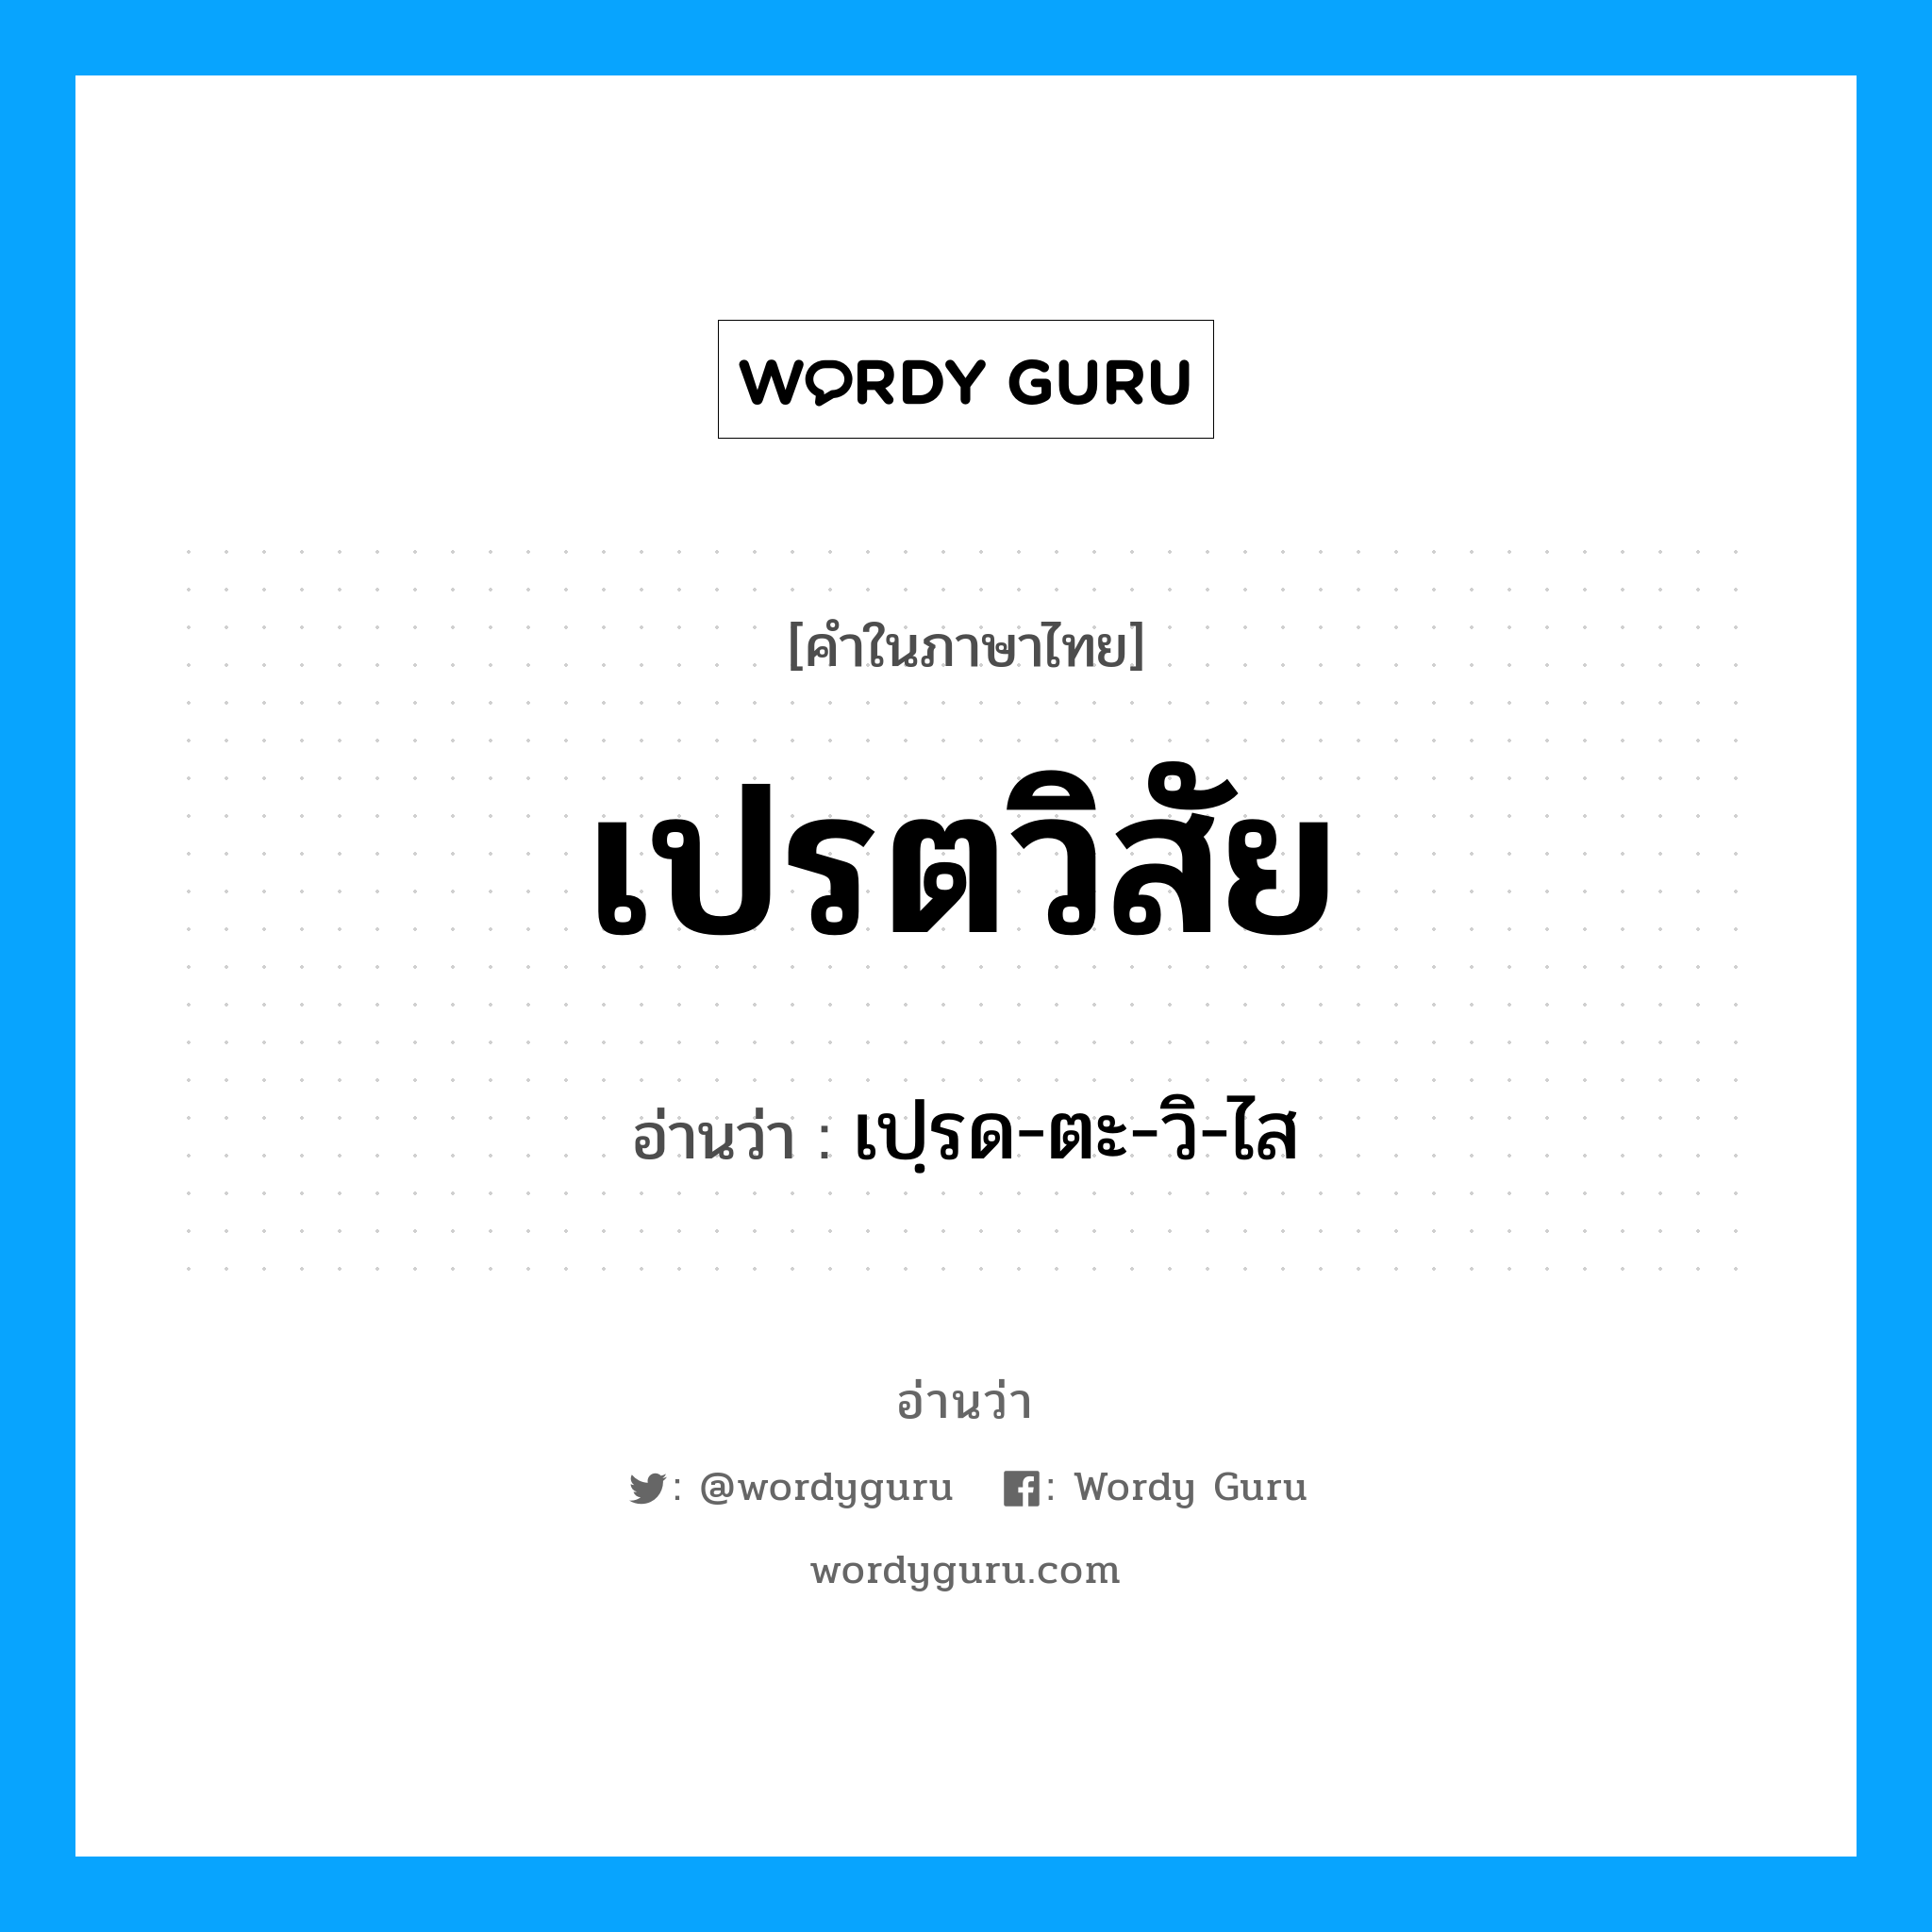 เปฺรด-ตะ-วิ-ไส เป็นคำอ่านของคำไหน?, คำในภาษาไทย เปฺรด-ตะ-วิ-ไส อ่านว่า เปรตวิสัย